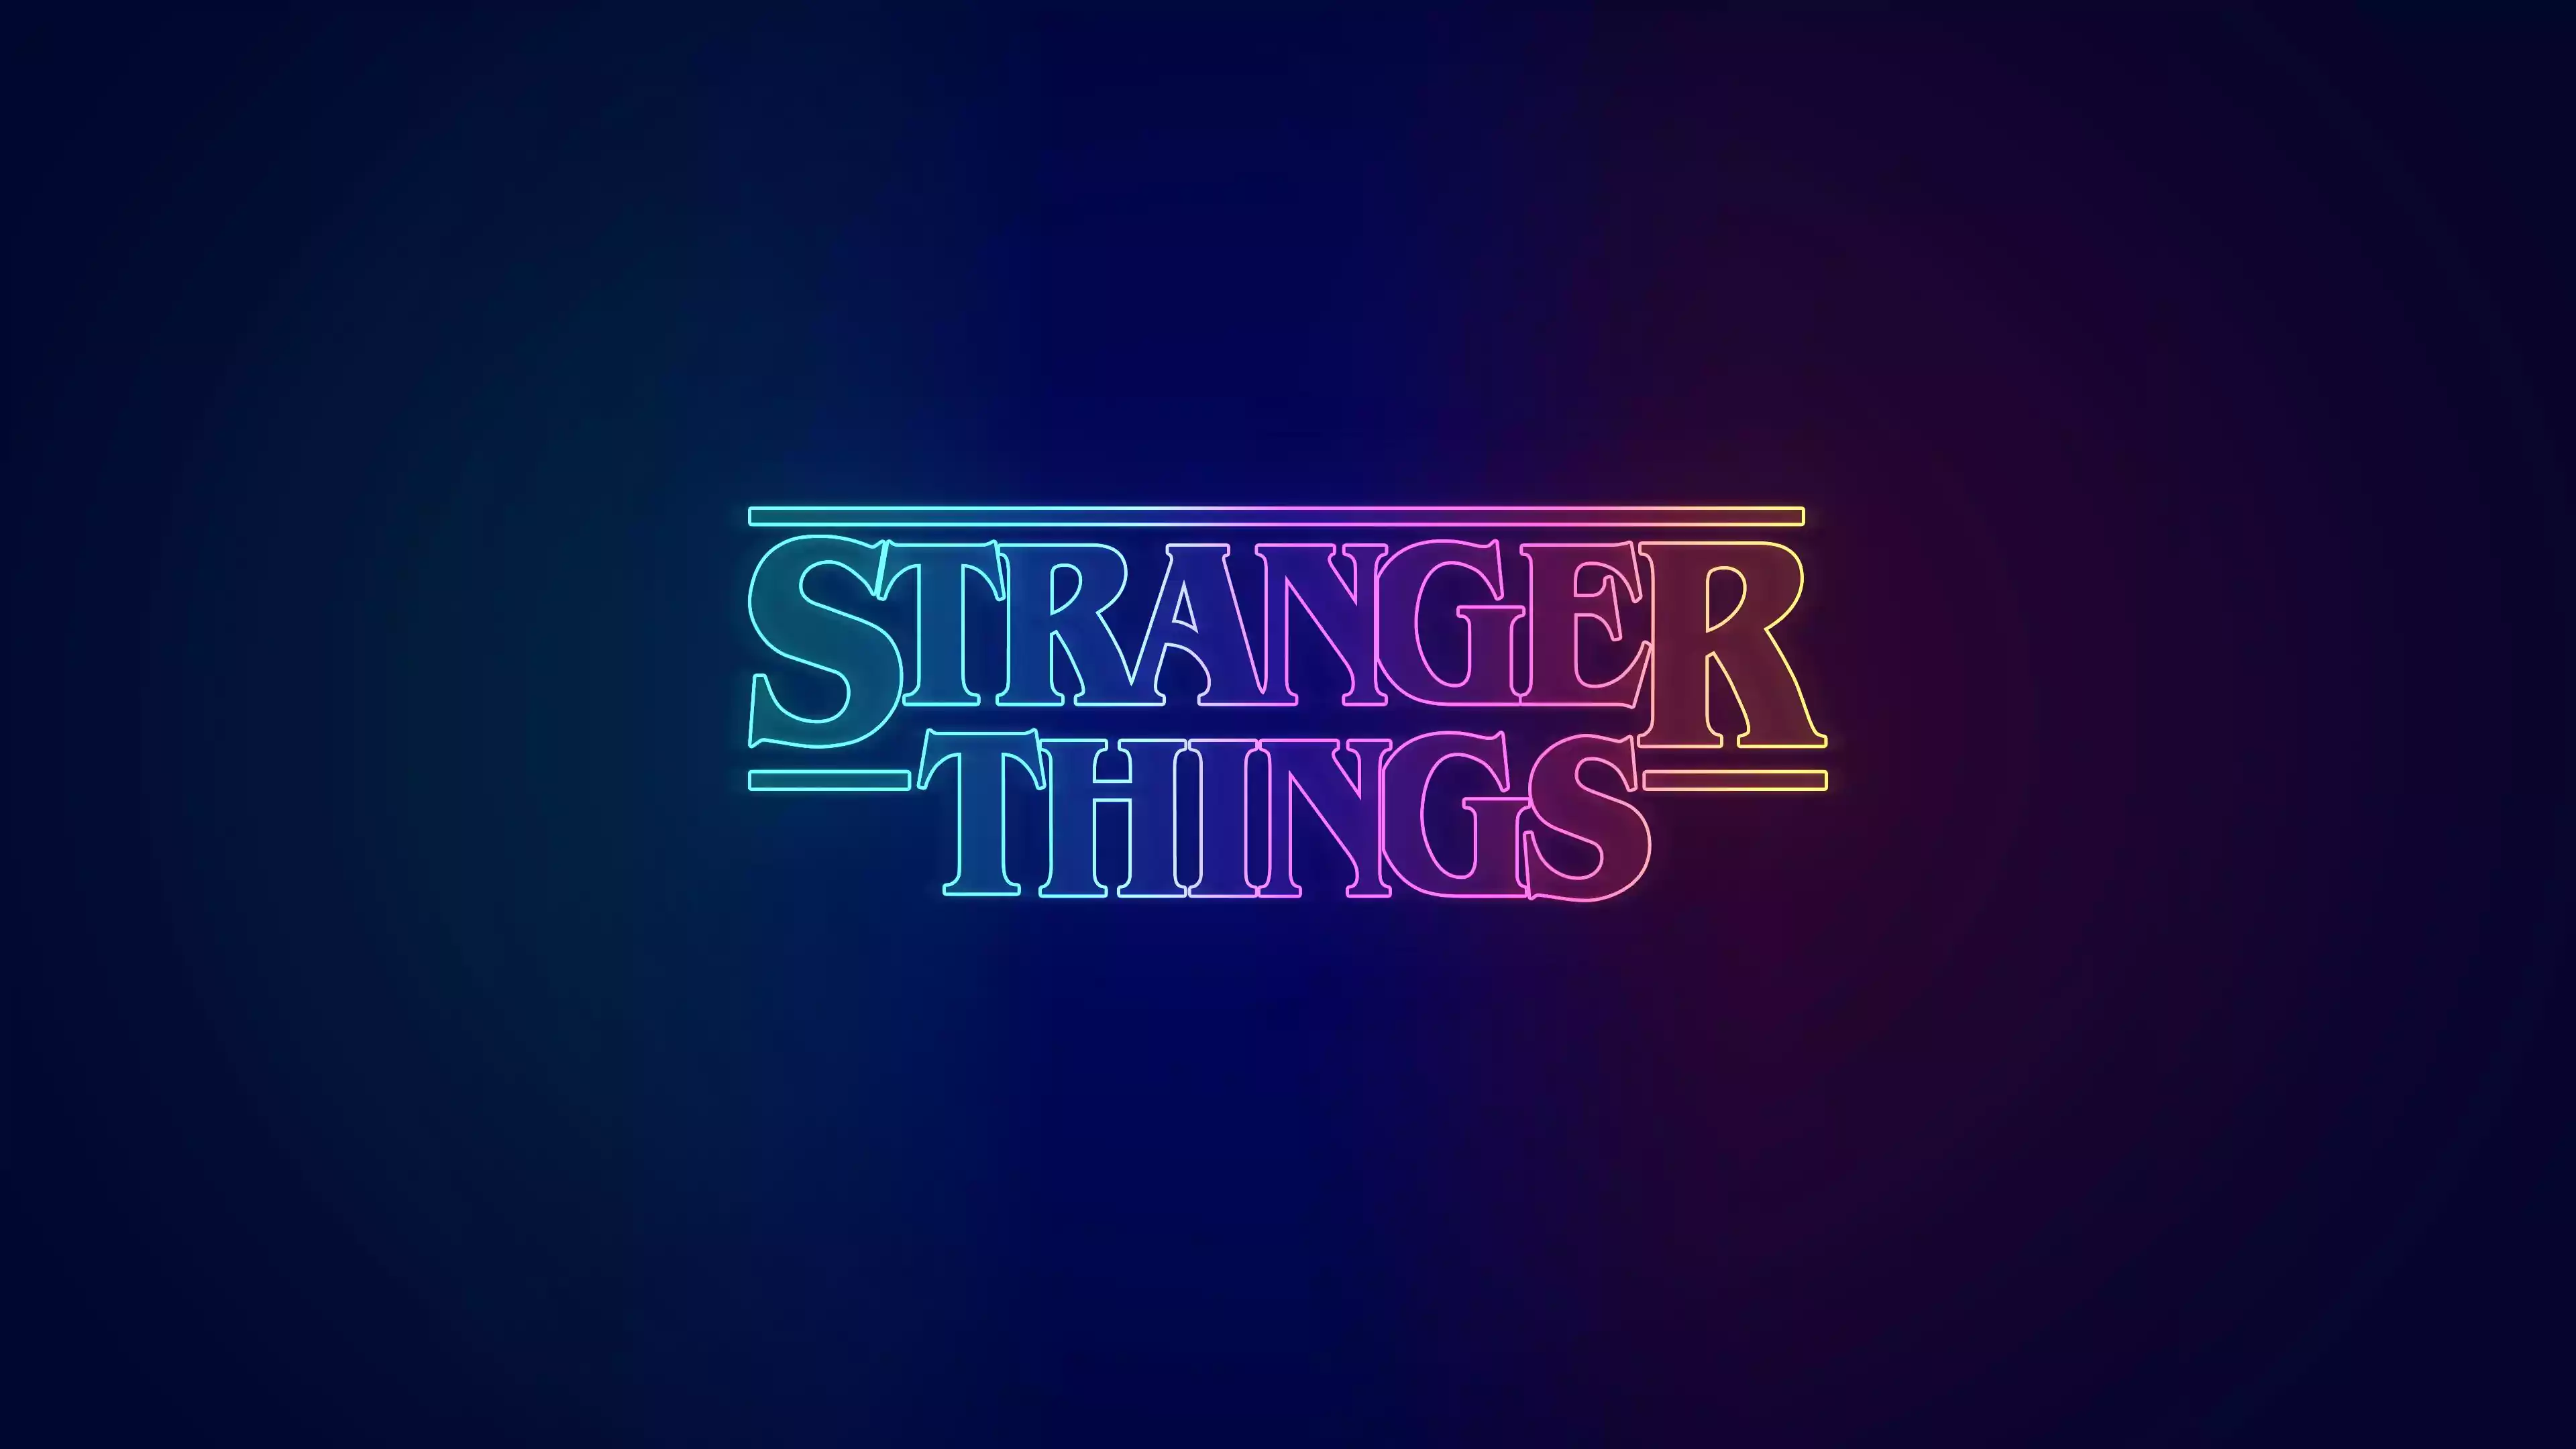 Stranger Things wallpaper 4k for your desktop, phone or tablet - Stranger Things